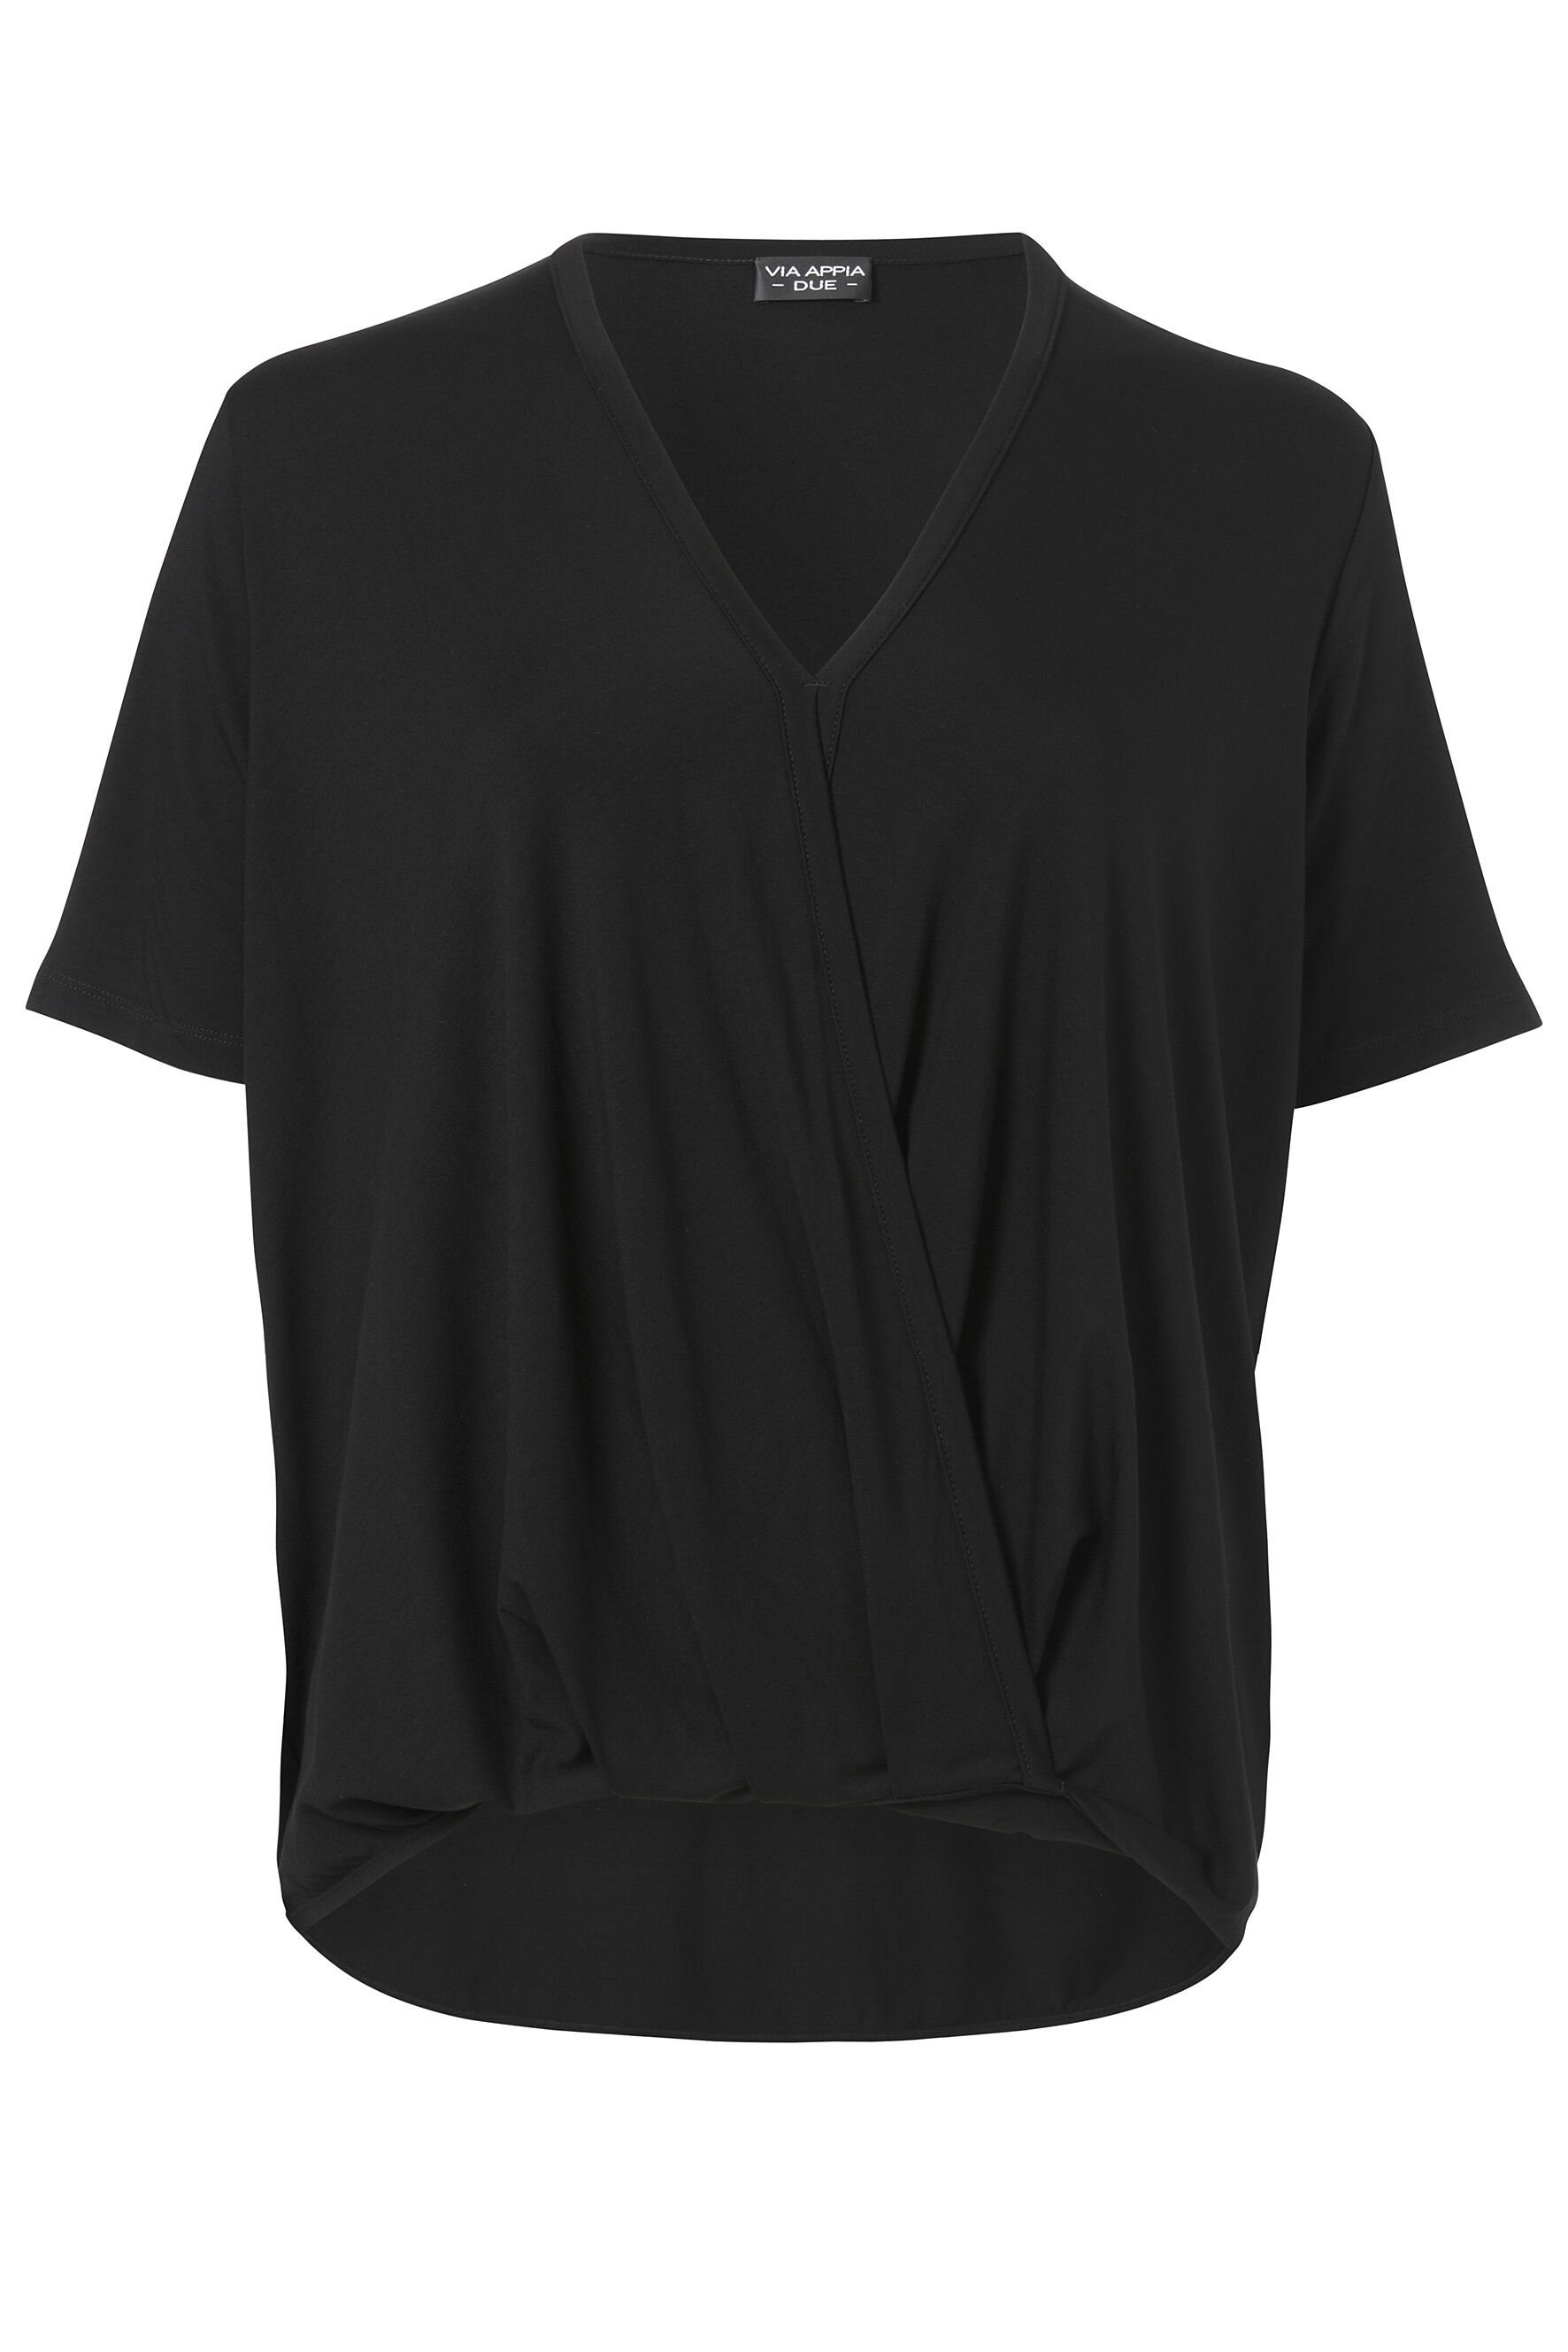 VIA APPIA DUE Klassische Bluse schlichte Optik schwarz | Blusenshirts